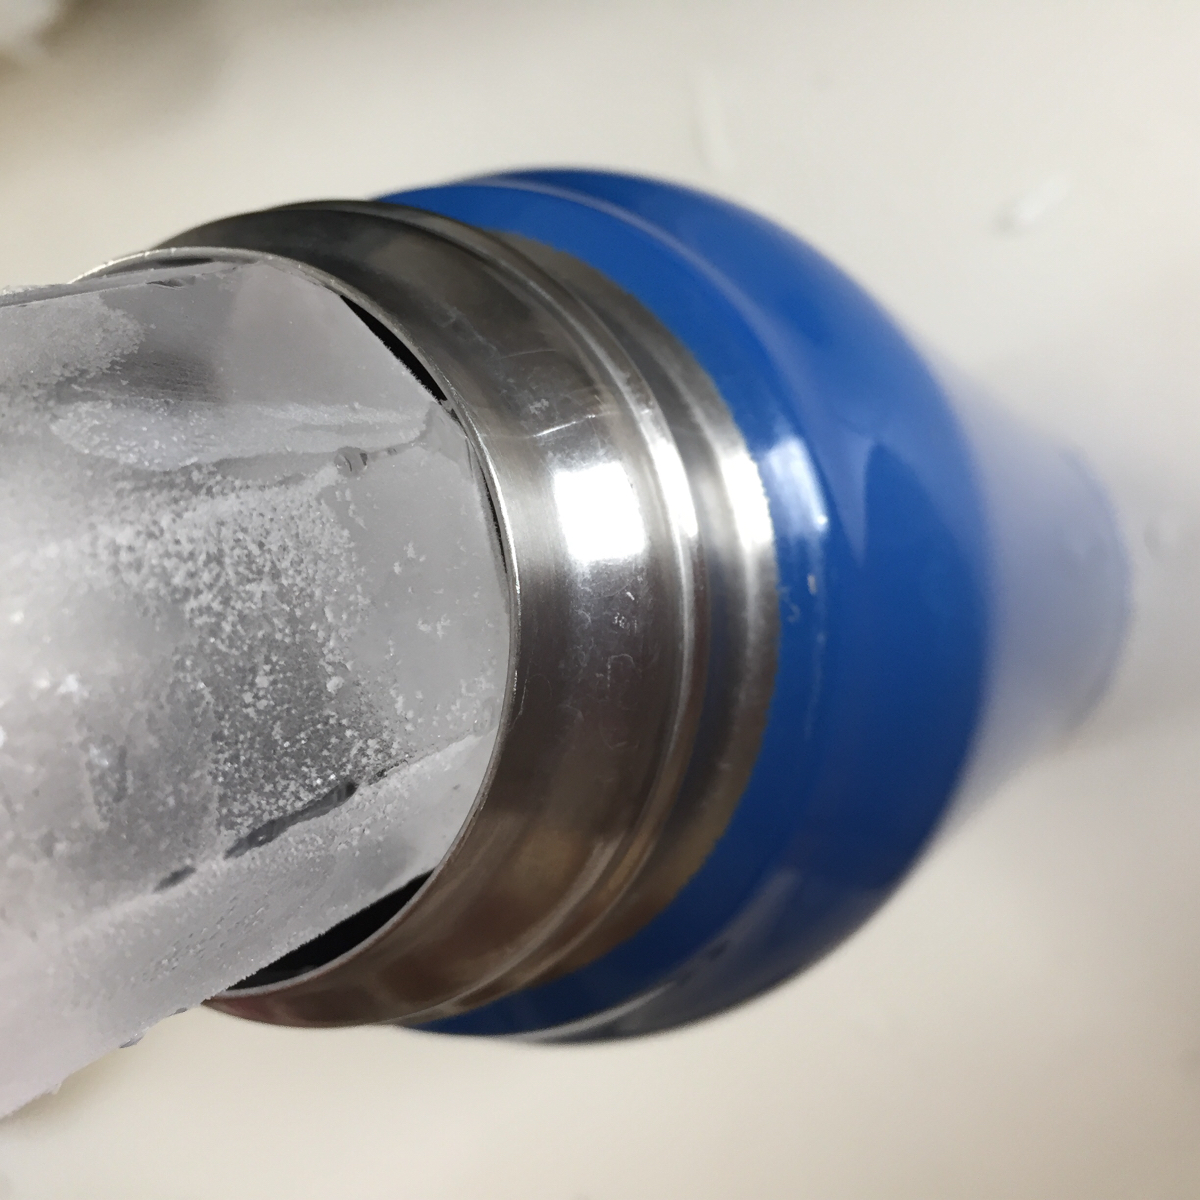 氷作りに追われている方に マイボトル ペットボトル用など用途別 100均 の氷作りグッズ3選